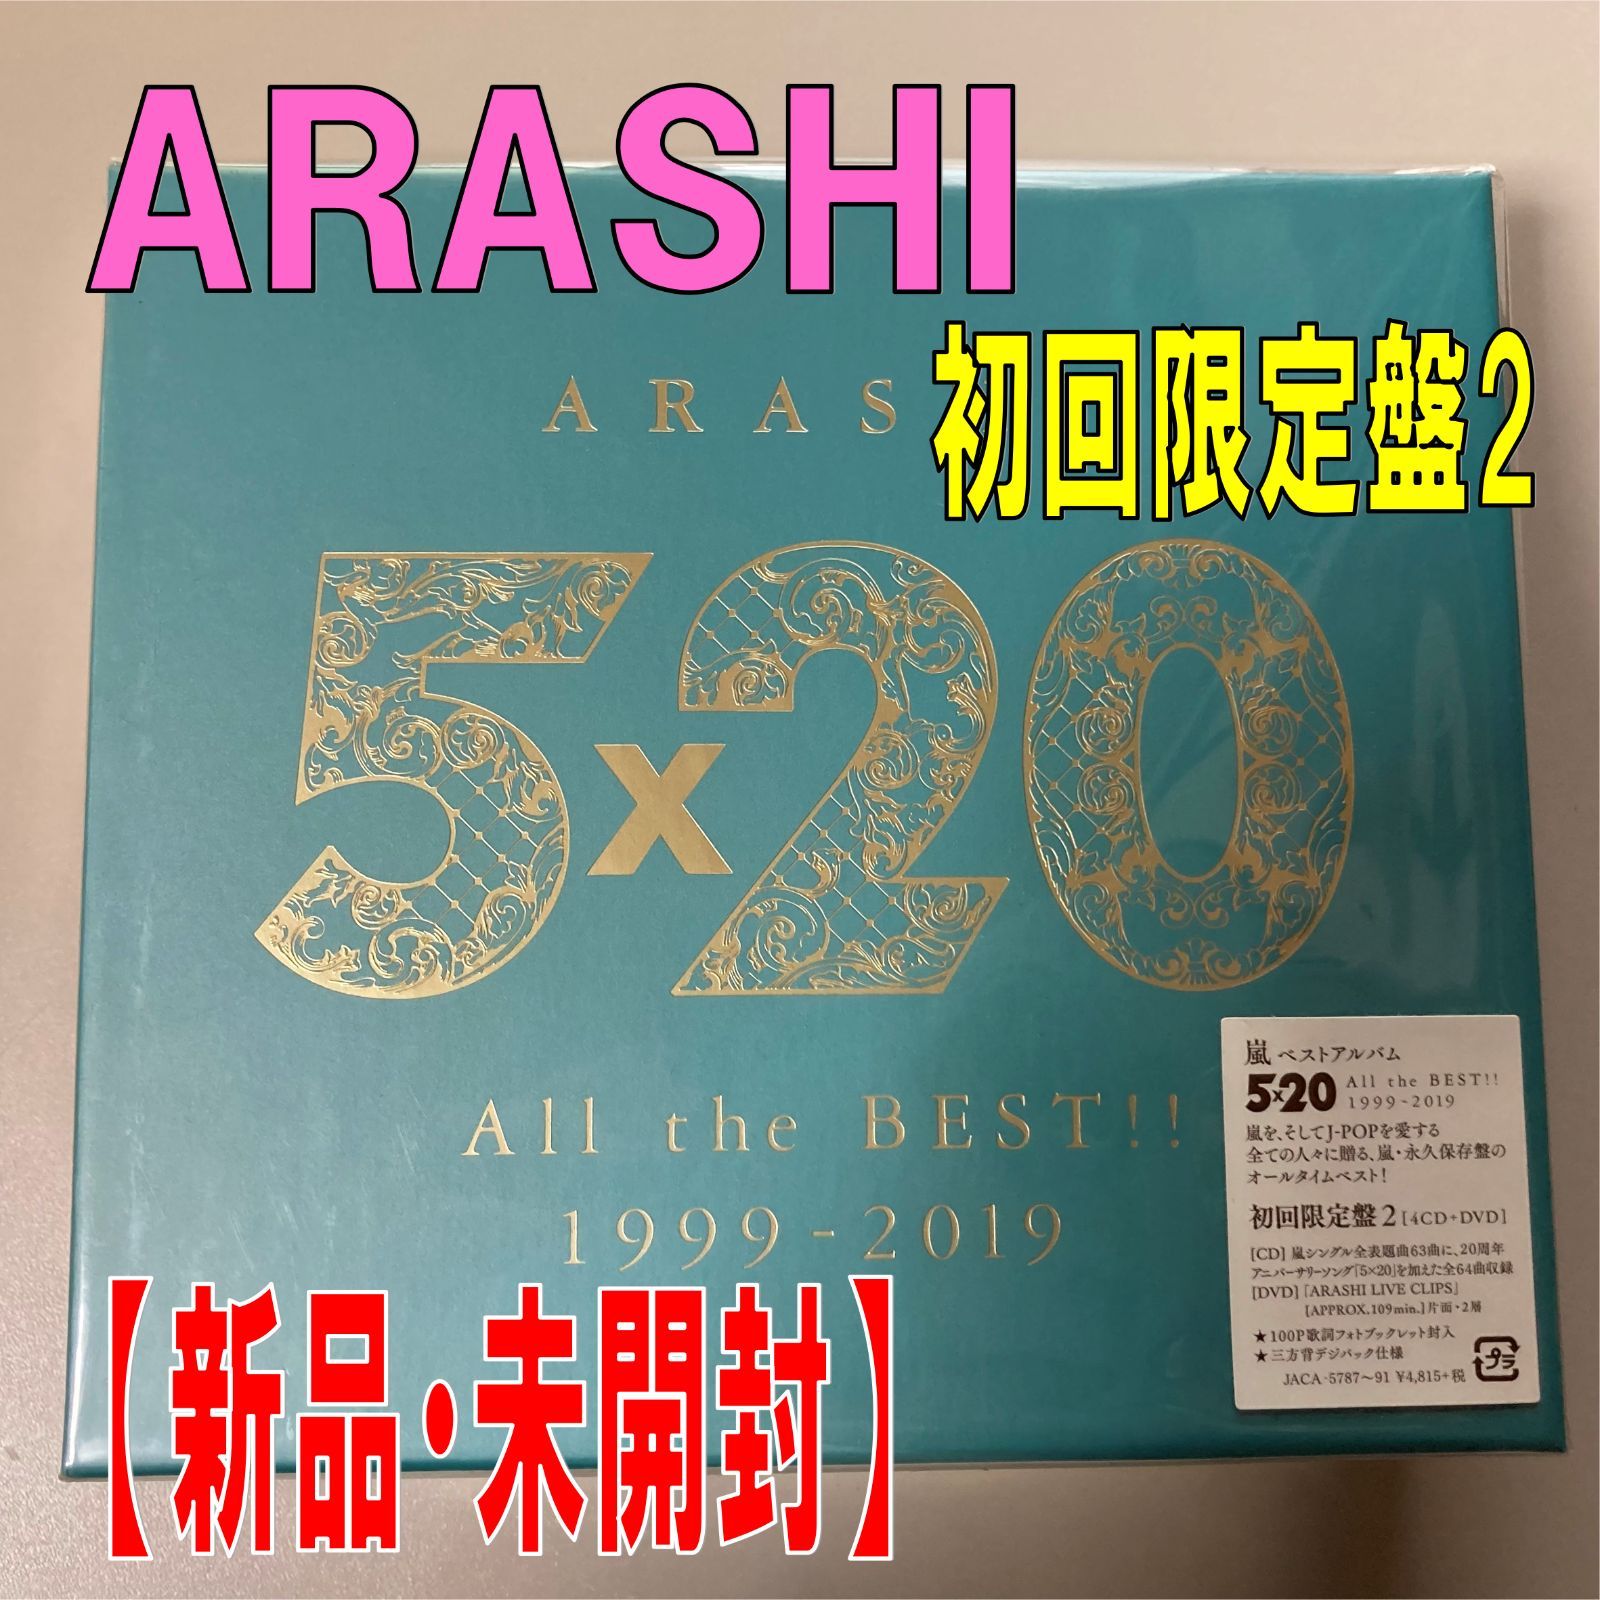 嵐5×20 初回限定版1 新品未開封豪華スペシャルパッケージ仕様